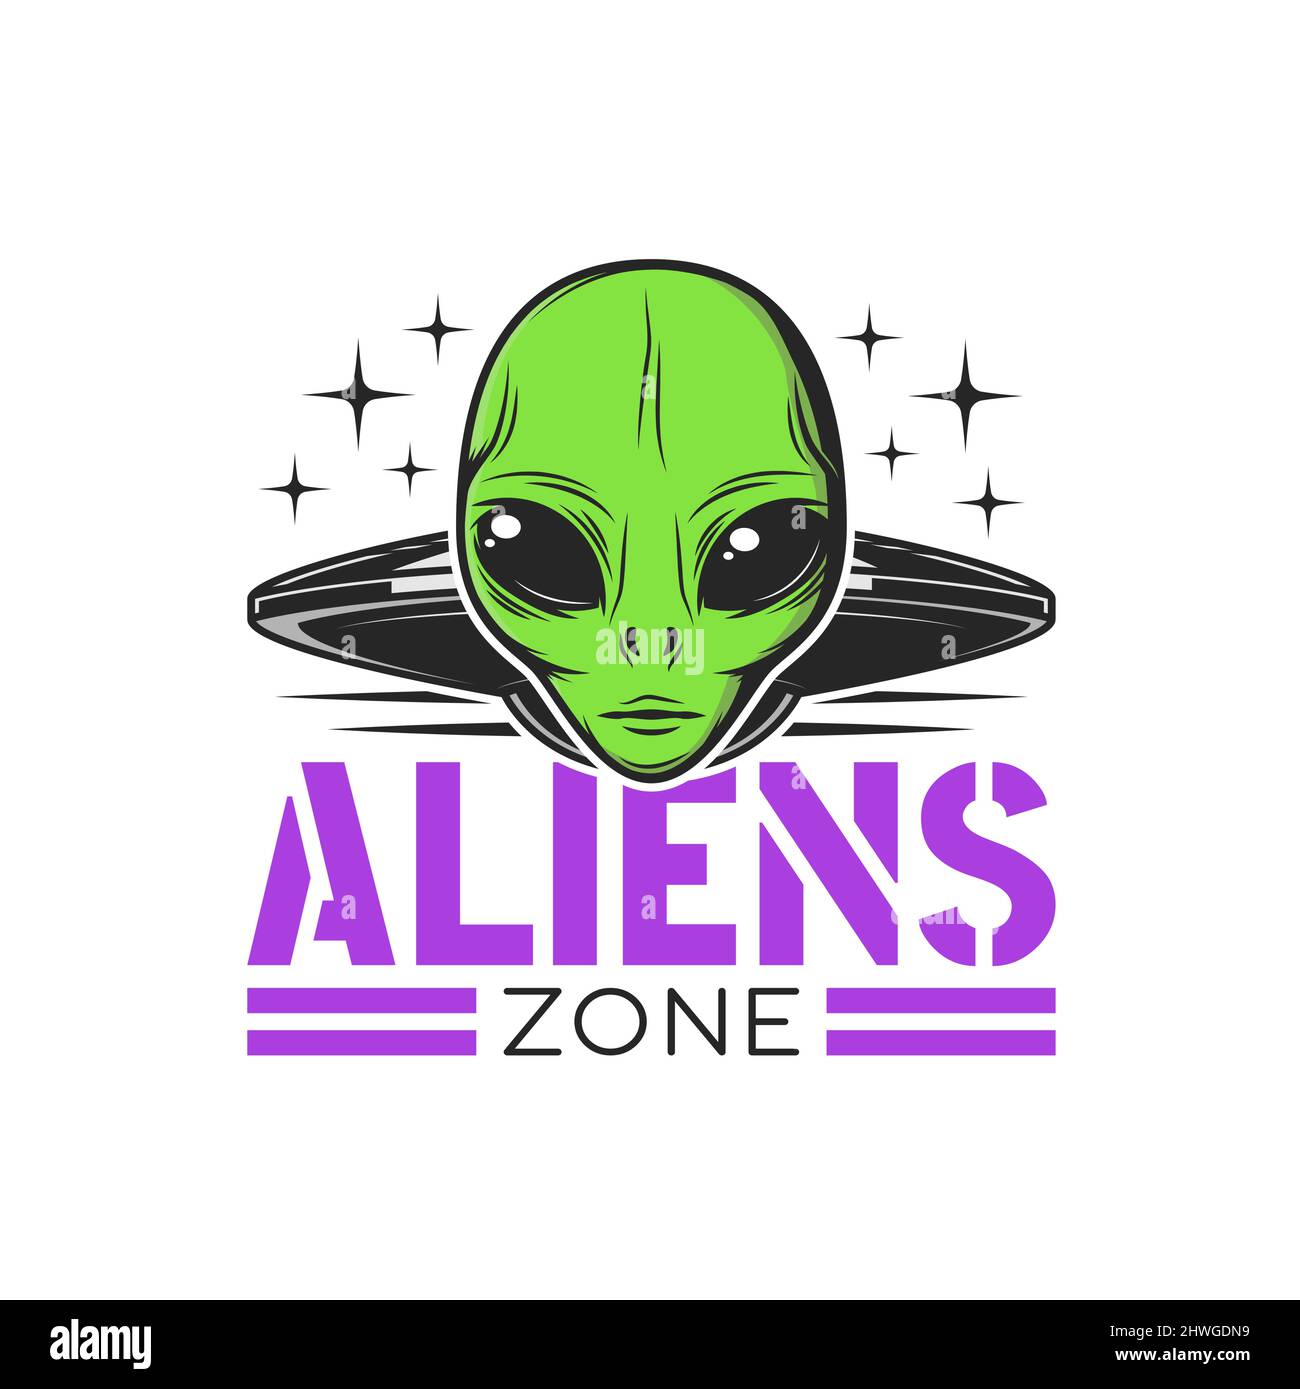 Aliens Zone Symbol mit außerirdischen Gesicht und Alien-Raumschiff. Weltraumgalaxie Exploration und Forschung Vektor Aufkleber, UFO-Territorium Zeichen mit fliegender Untertasse und humanoid Alien mit grüner Haut Stock Vektor